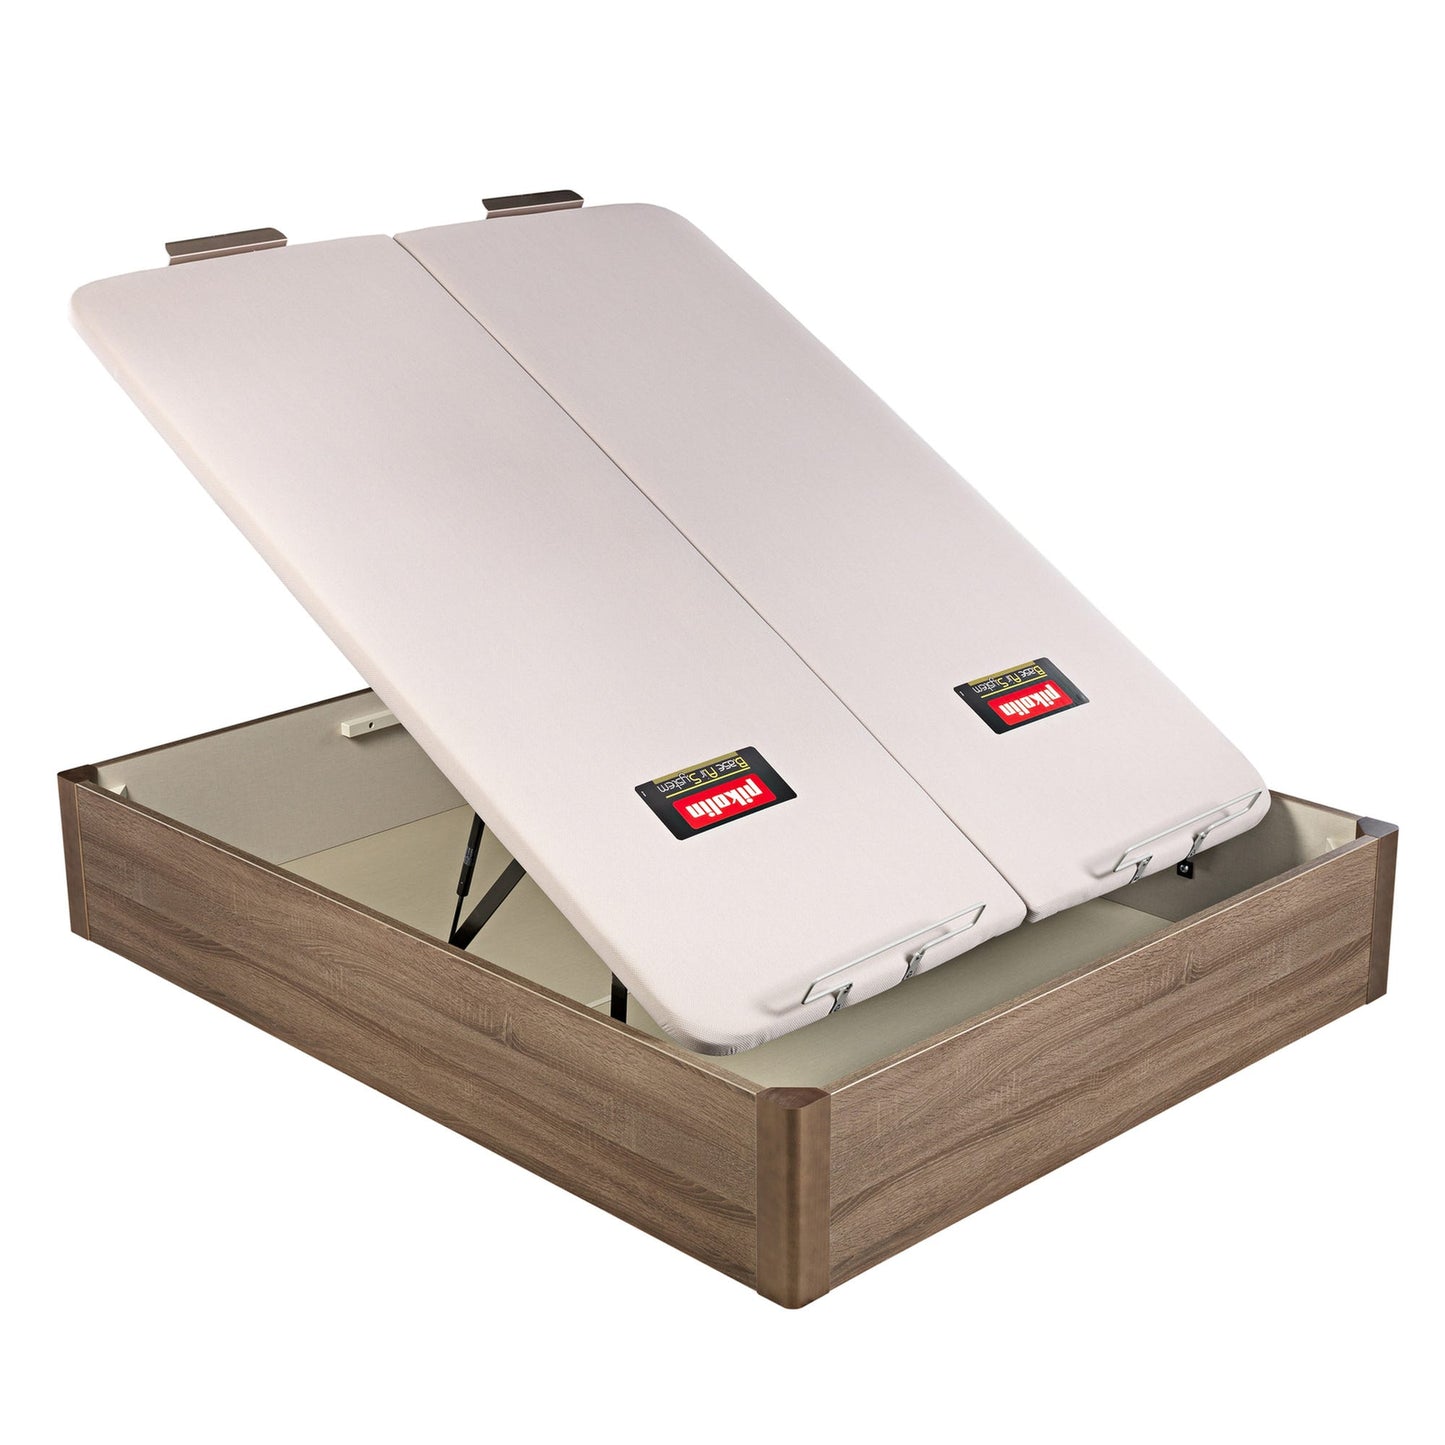 Canapé abatible de madera de tapa doble de color roble - DESIGN - 180x200